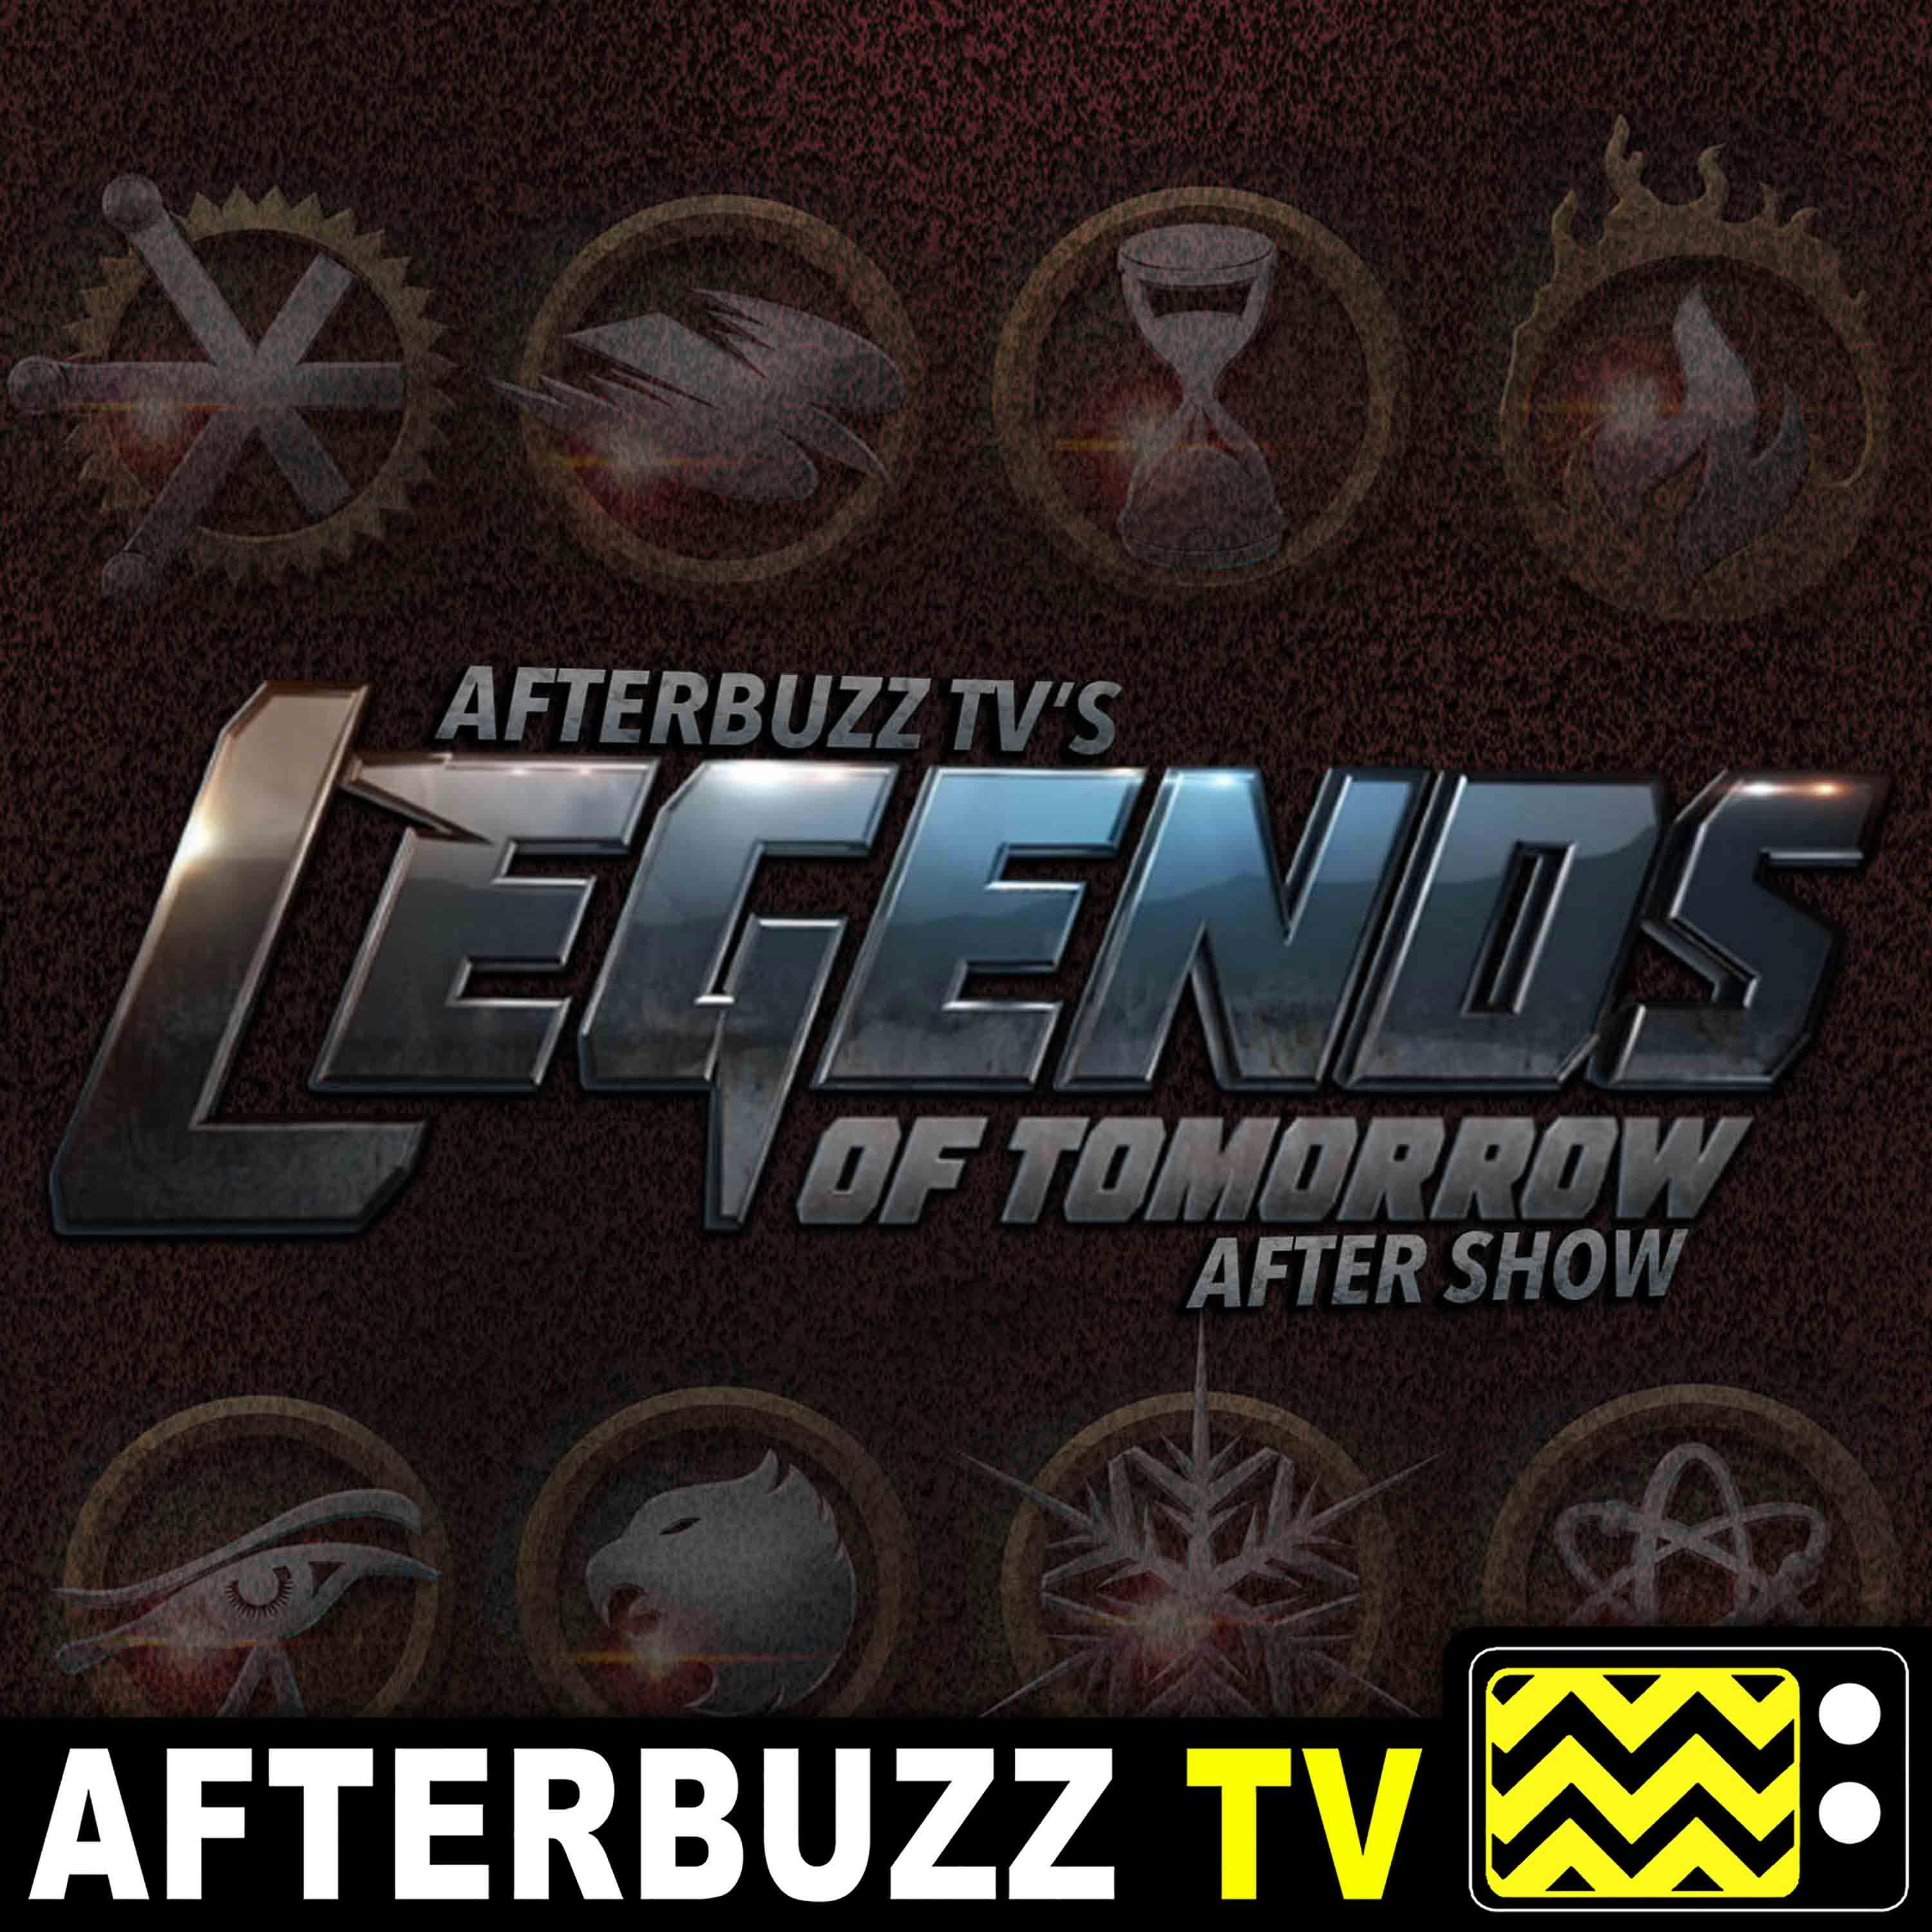 A Cruel Fate - S5 E9 ‘Legends Of Tomorrow’ Recap & After Show